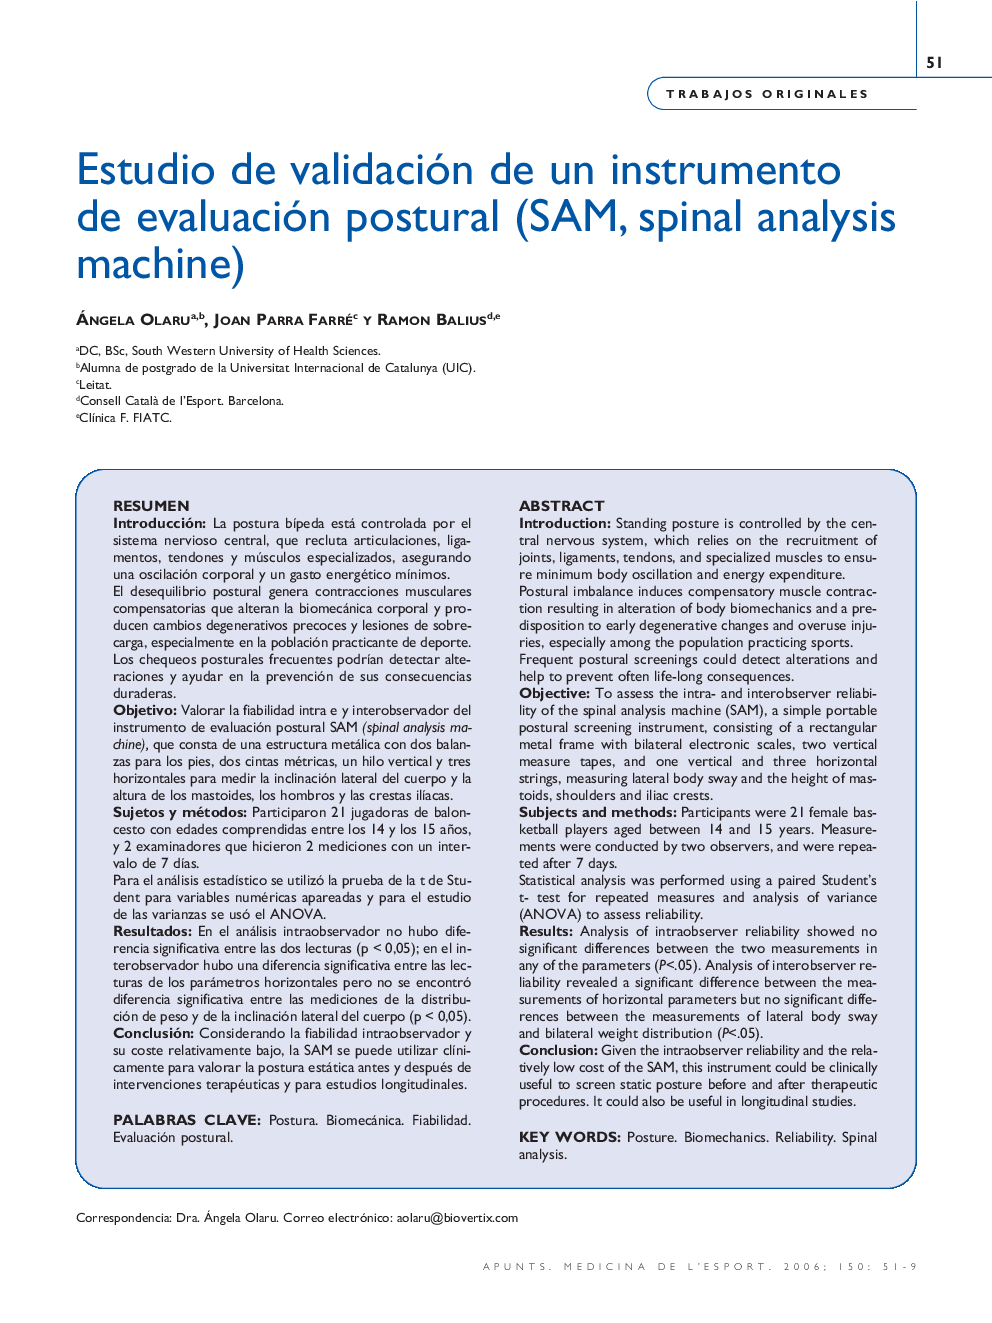 Estudio de validación de un instrumento de evaluación postural (SAM, spinal analysis machine)